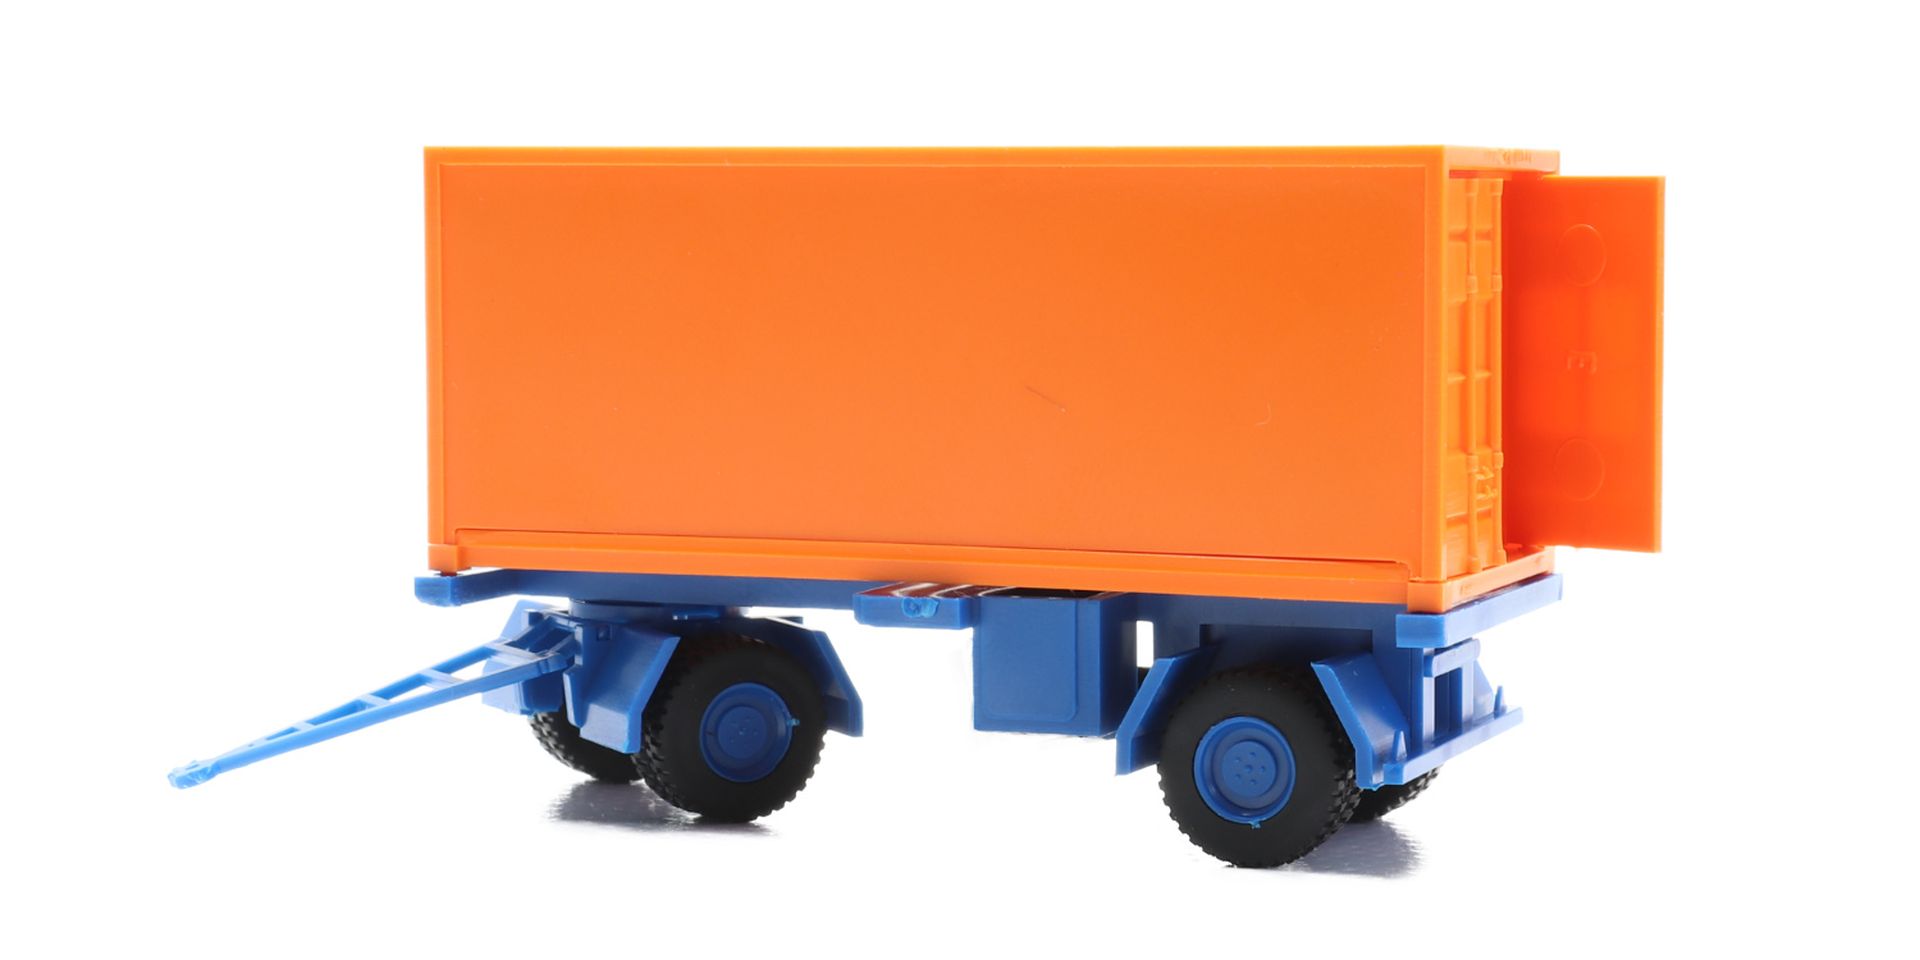 igra 66618225 - Auflieger orange Container, Bausatz